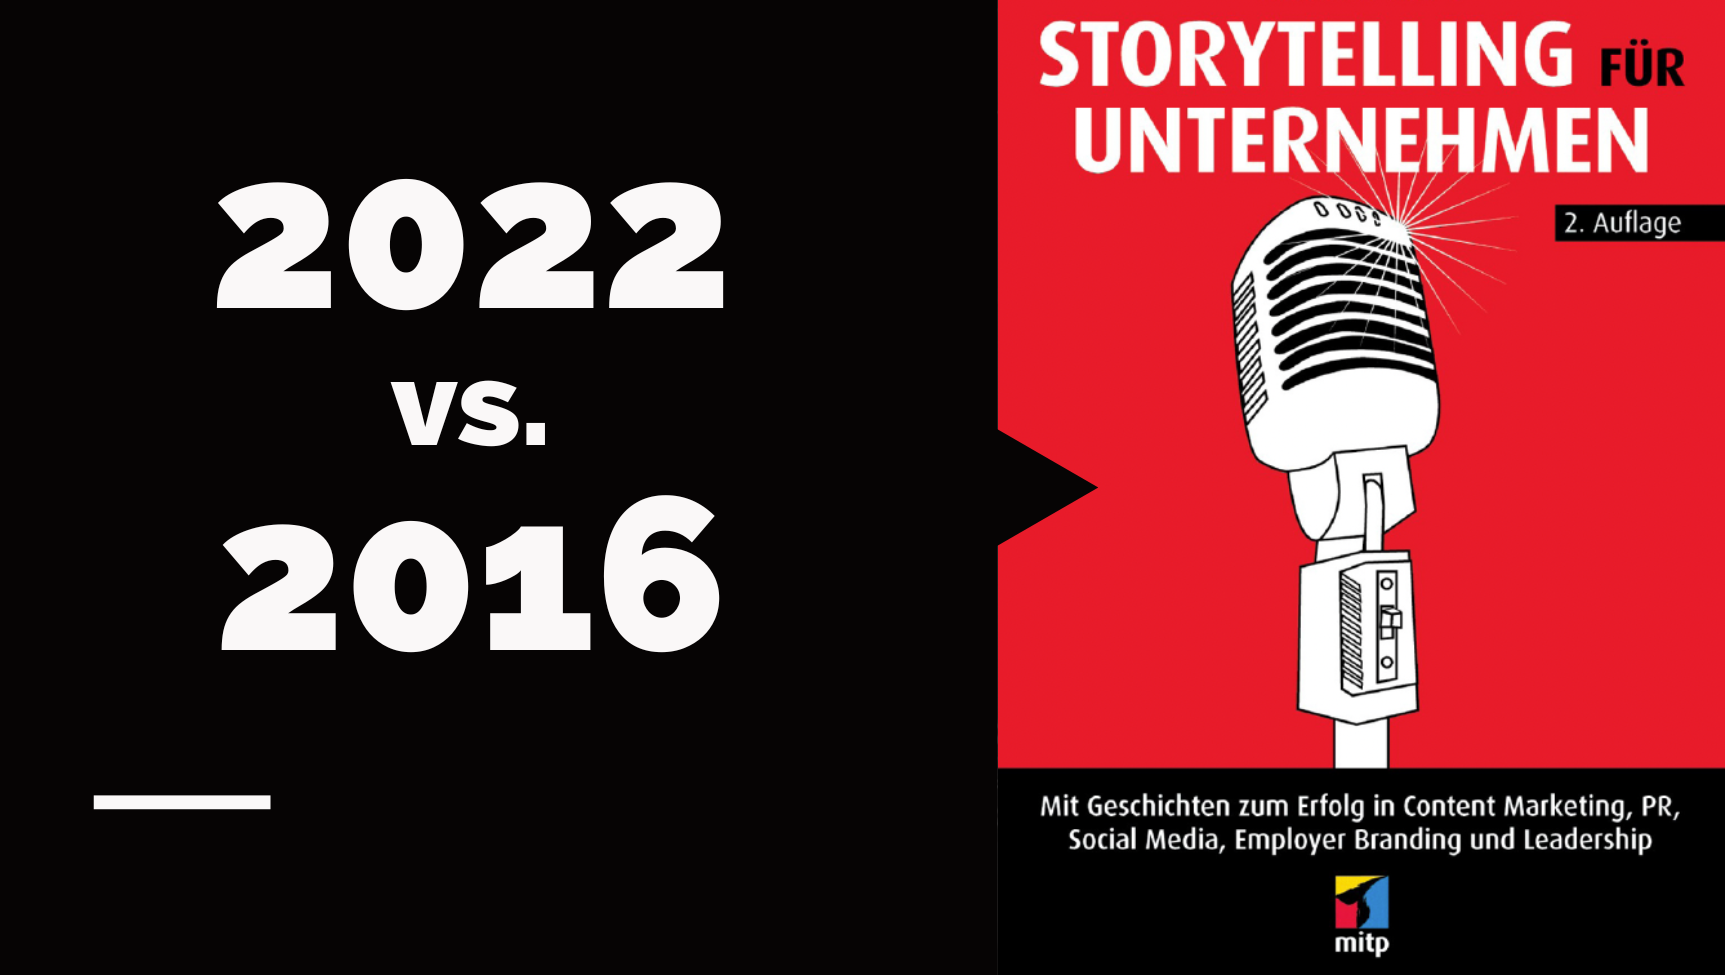 Storytelling für Unternehmen 2022 - Storytelling für Unternehmen im Jahr 2022